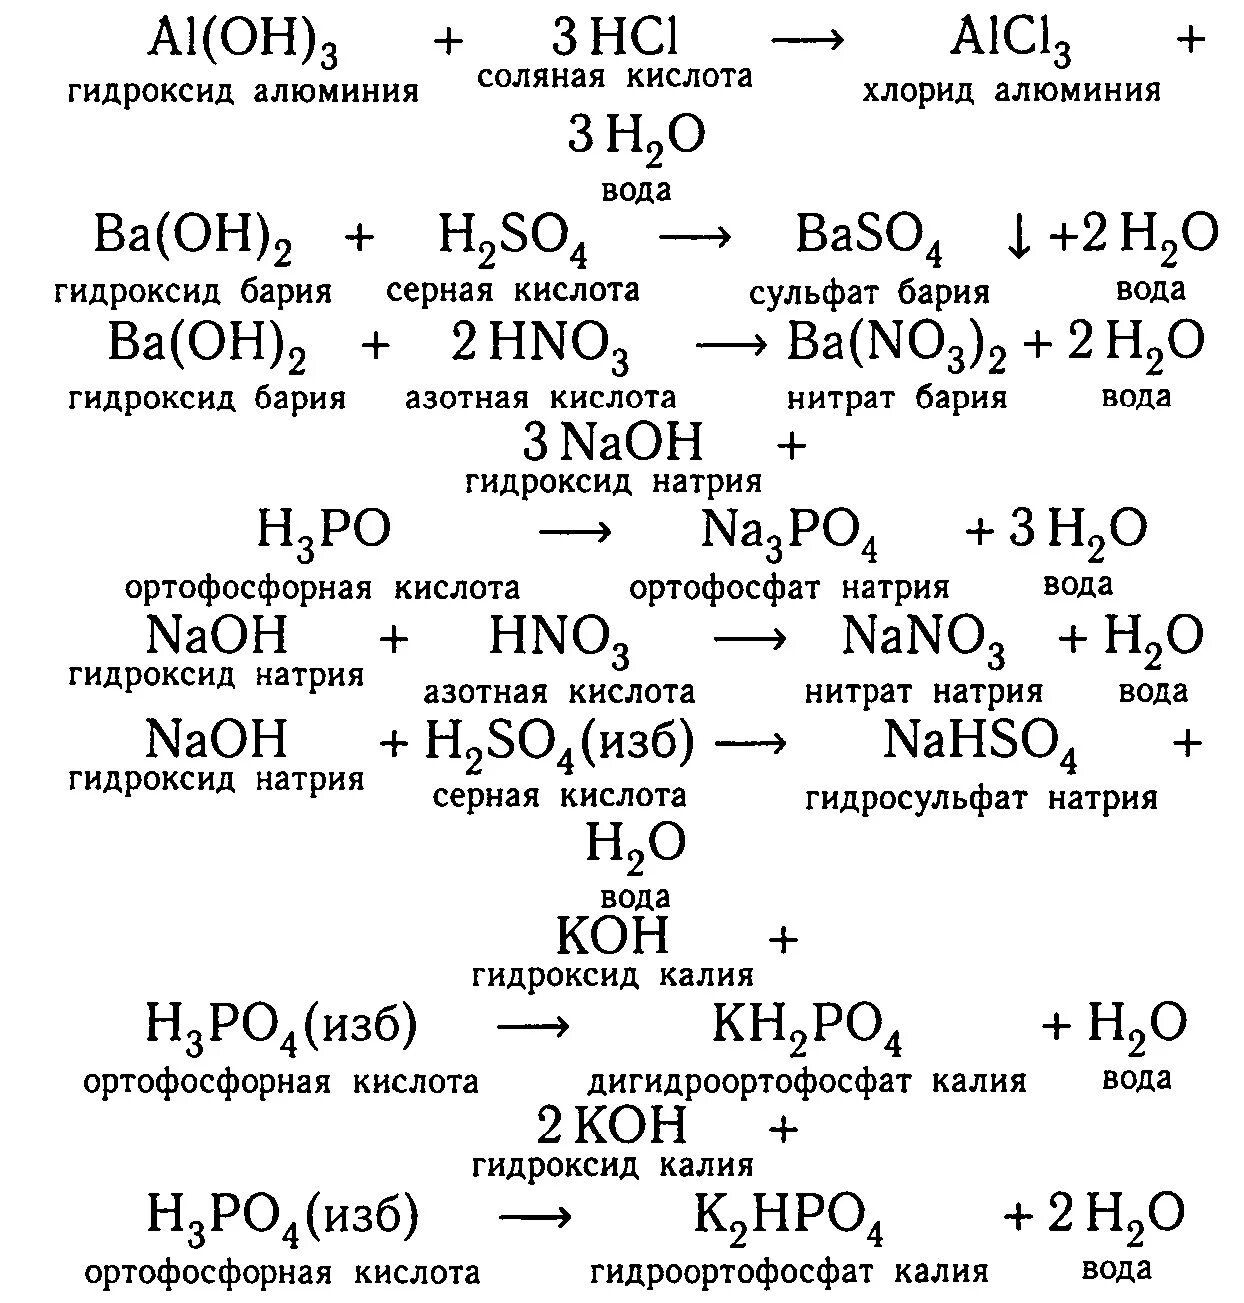 Гидроксид бария и серная кислота сульфат бария вода Тип. Сульфат алюминия плюс соляная кислота реакция. Гидроксид бария и серная кислота. Гидрокосидбария и сеоная кислота.